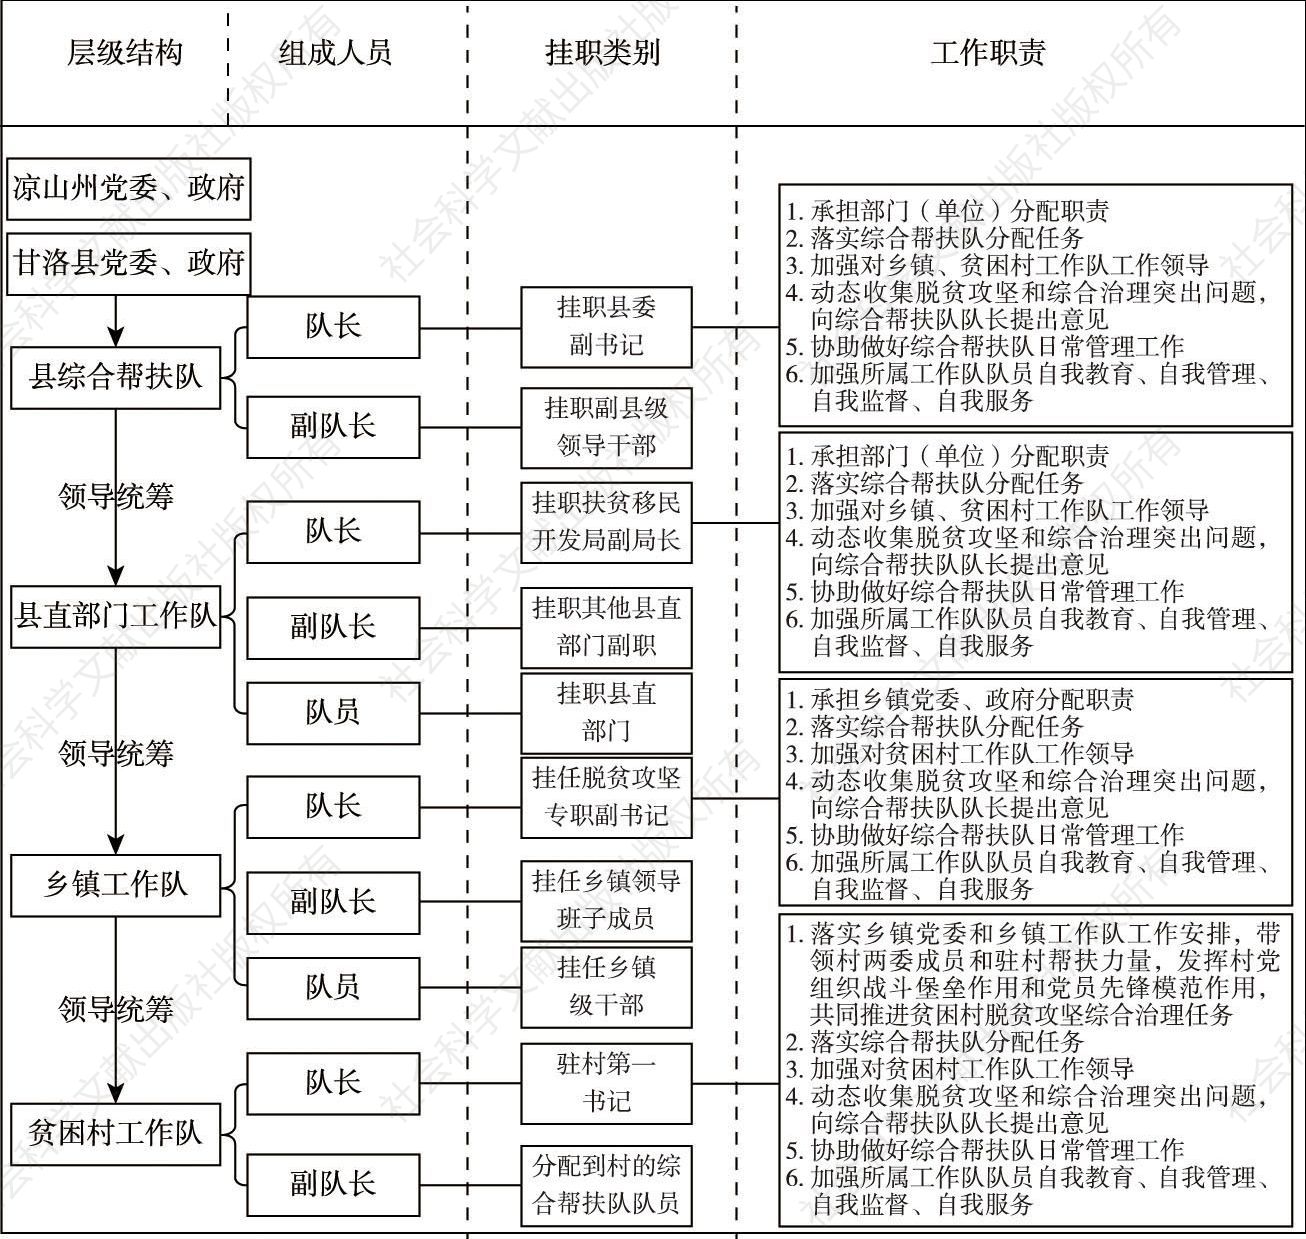 图1 甘洛县综合帮扶工作队结构